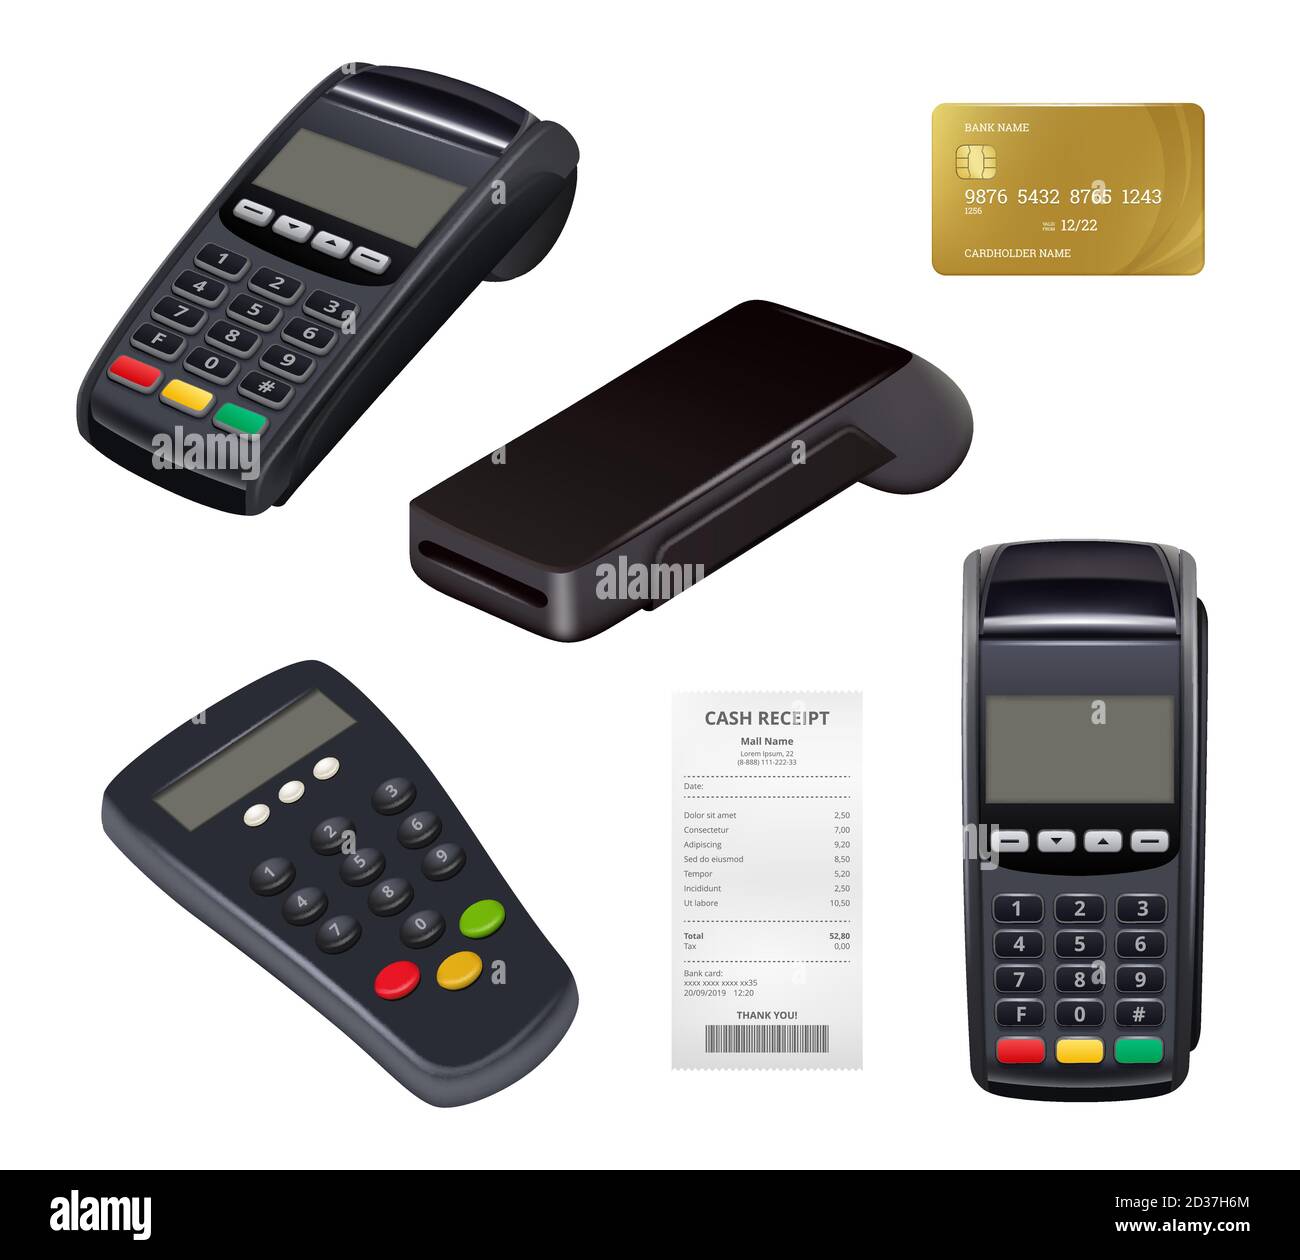 Zahlungsterminal. Nahaufnahme Geldeingang Kreditkarte Maschine für Fernzahlungen mobile nfc-Finanzierung Einzelhandel Banking-Tools Vektor Stock Vektor